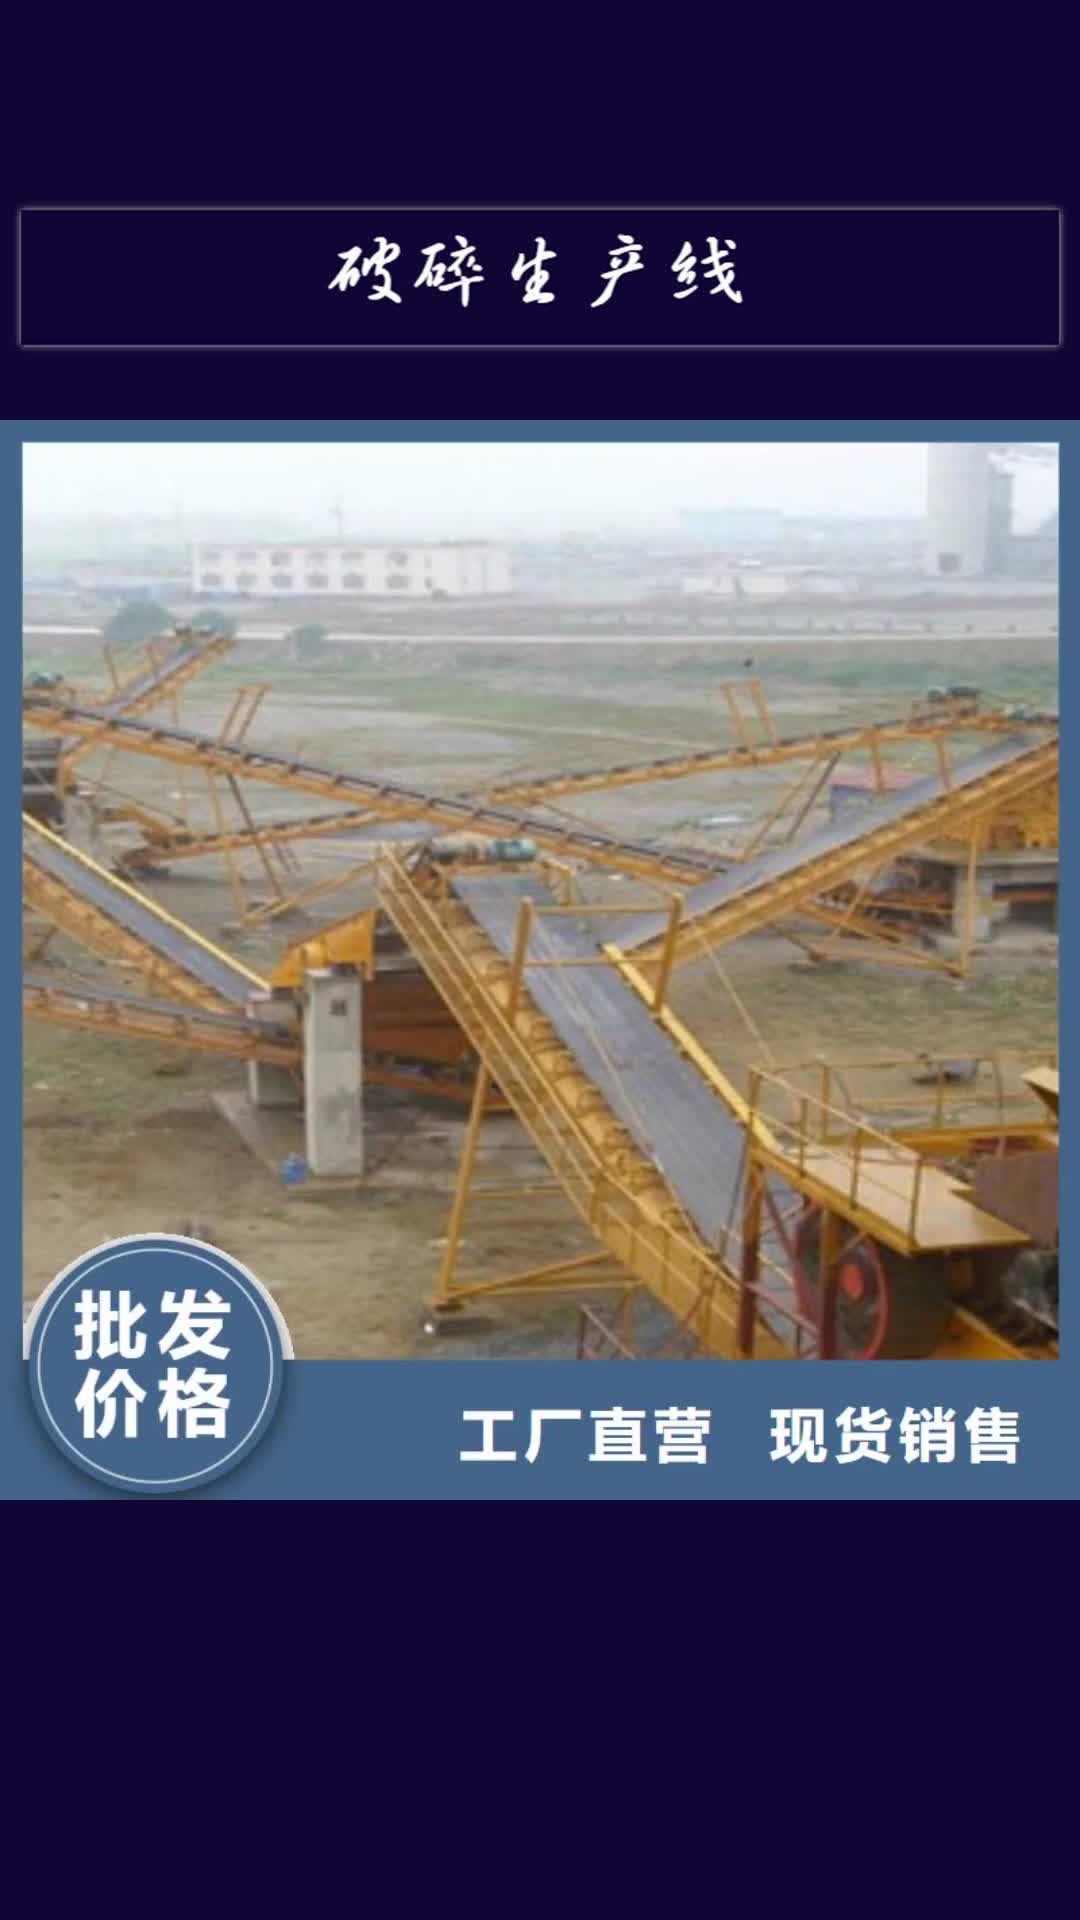 漯河 破碎生产线,【挖泥船】拥有核心技术优势